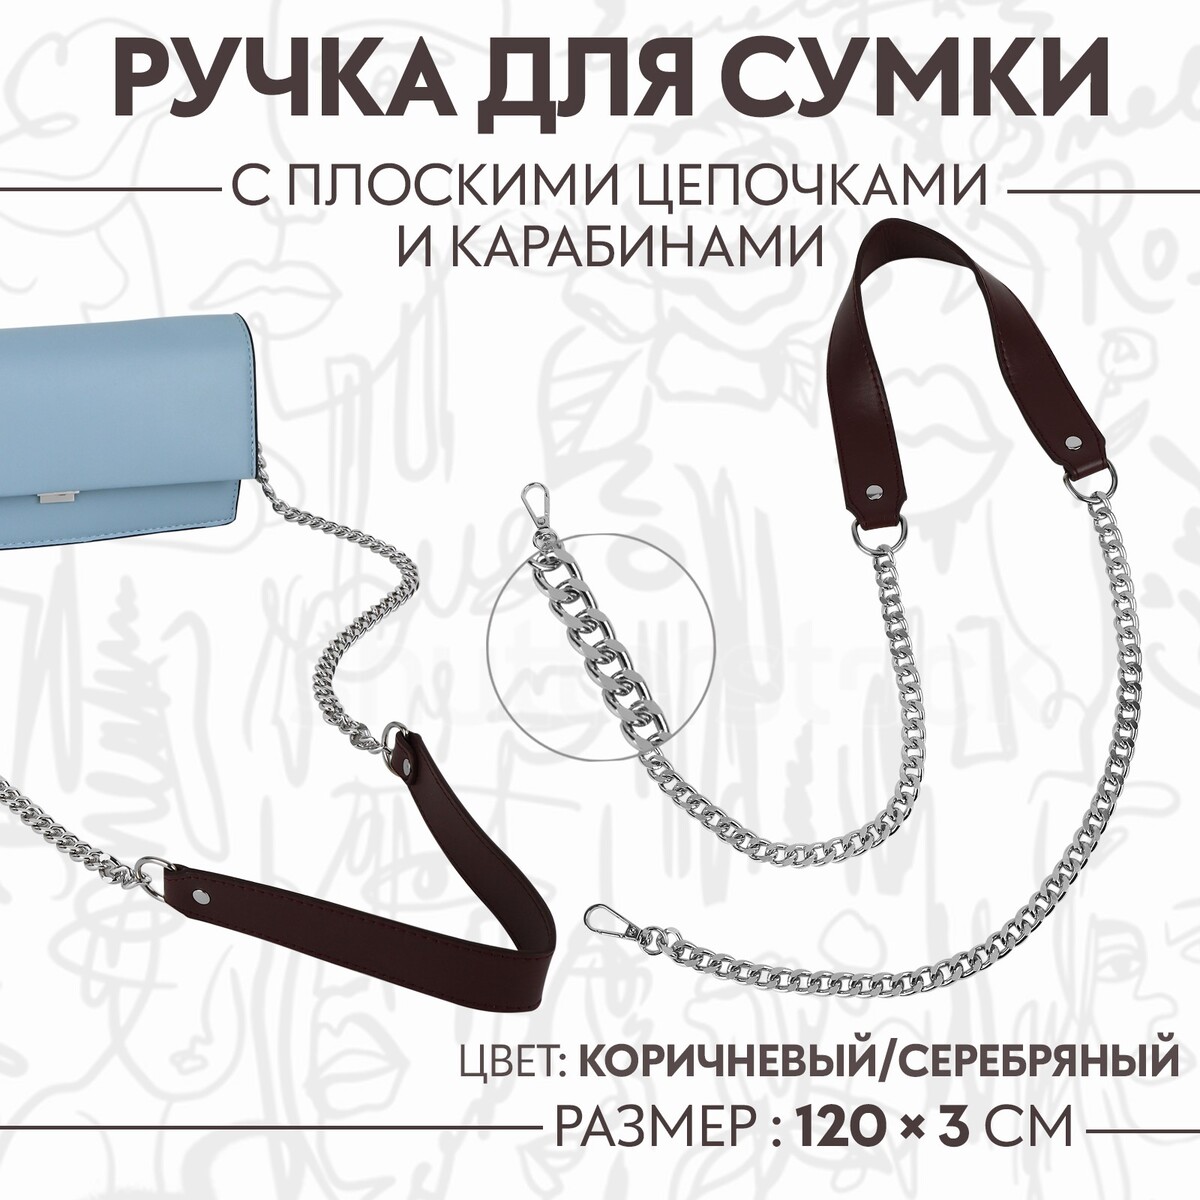 Ручка для сумки, с плоскими цепочками и карабинами, 120 × 3 см, цвет коричневый/серебряный ручка шнурок для сумки с карабинами 120 × 0 6 см коричневый